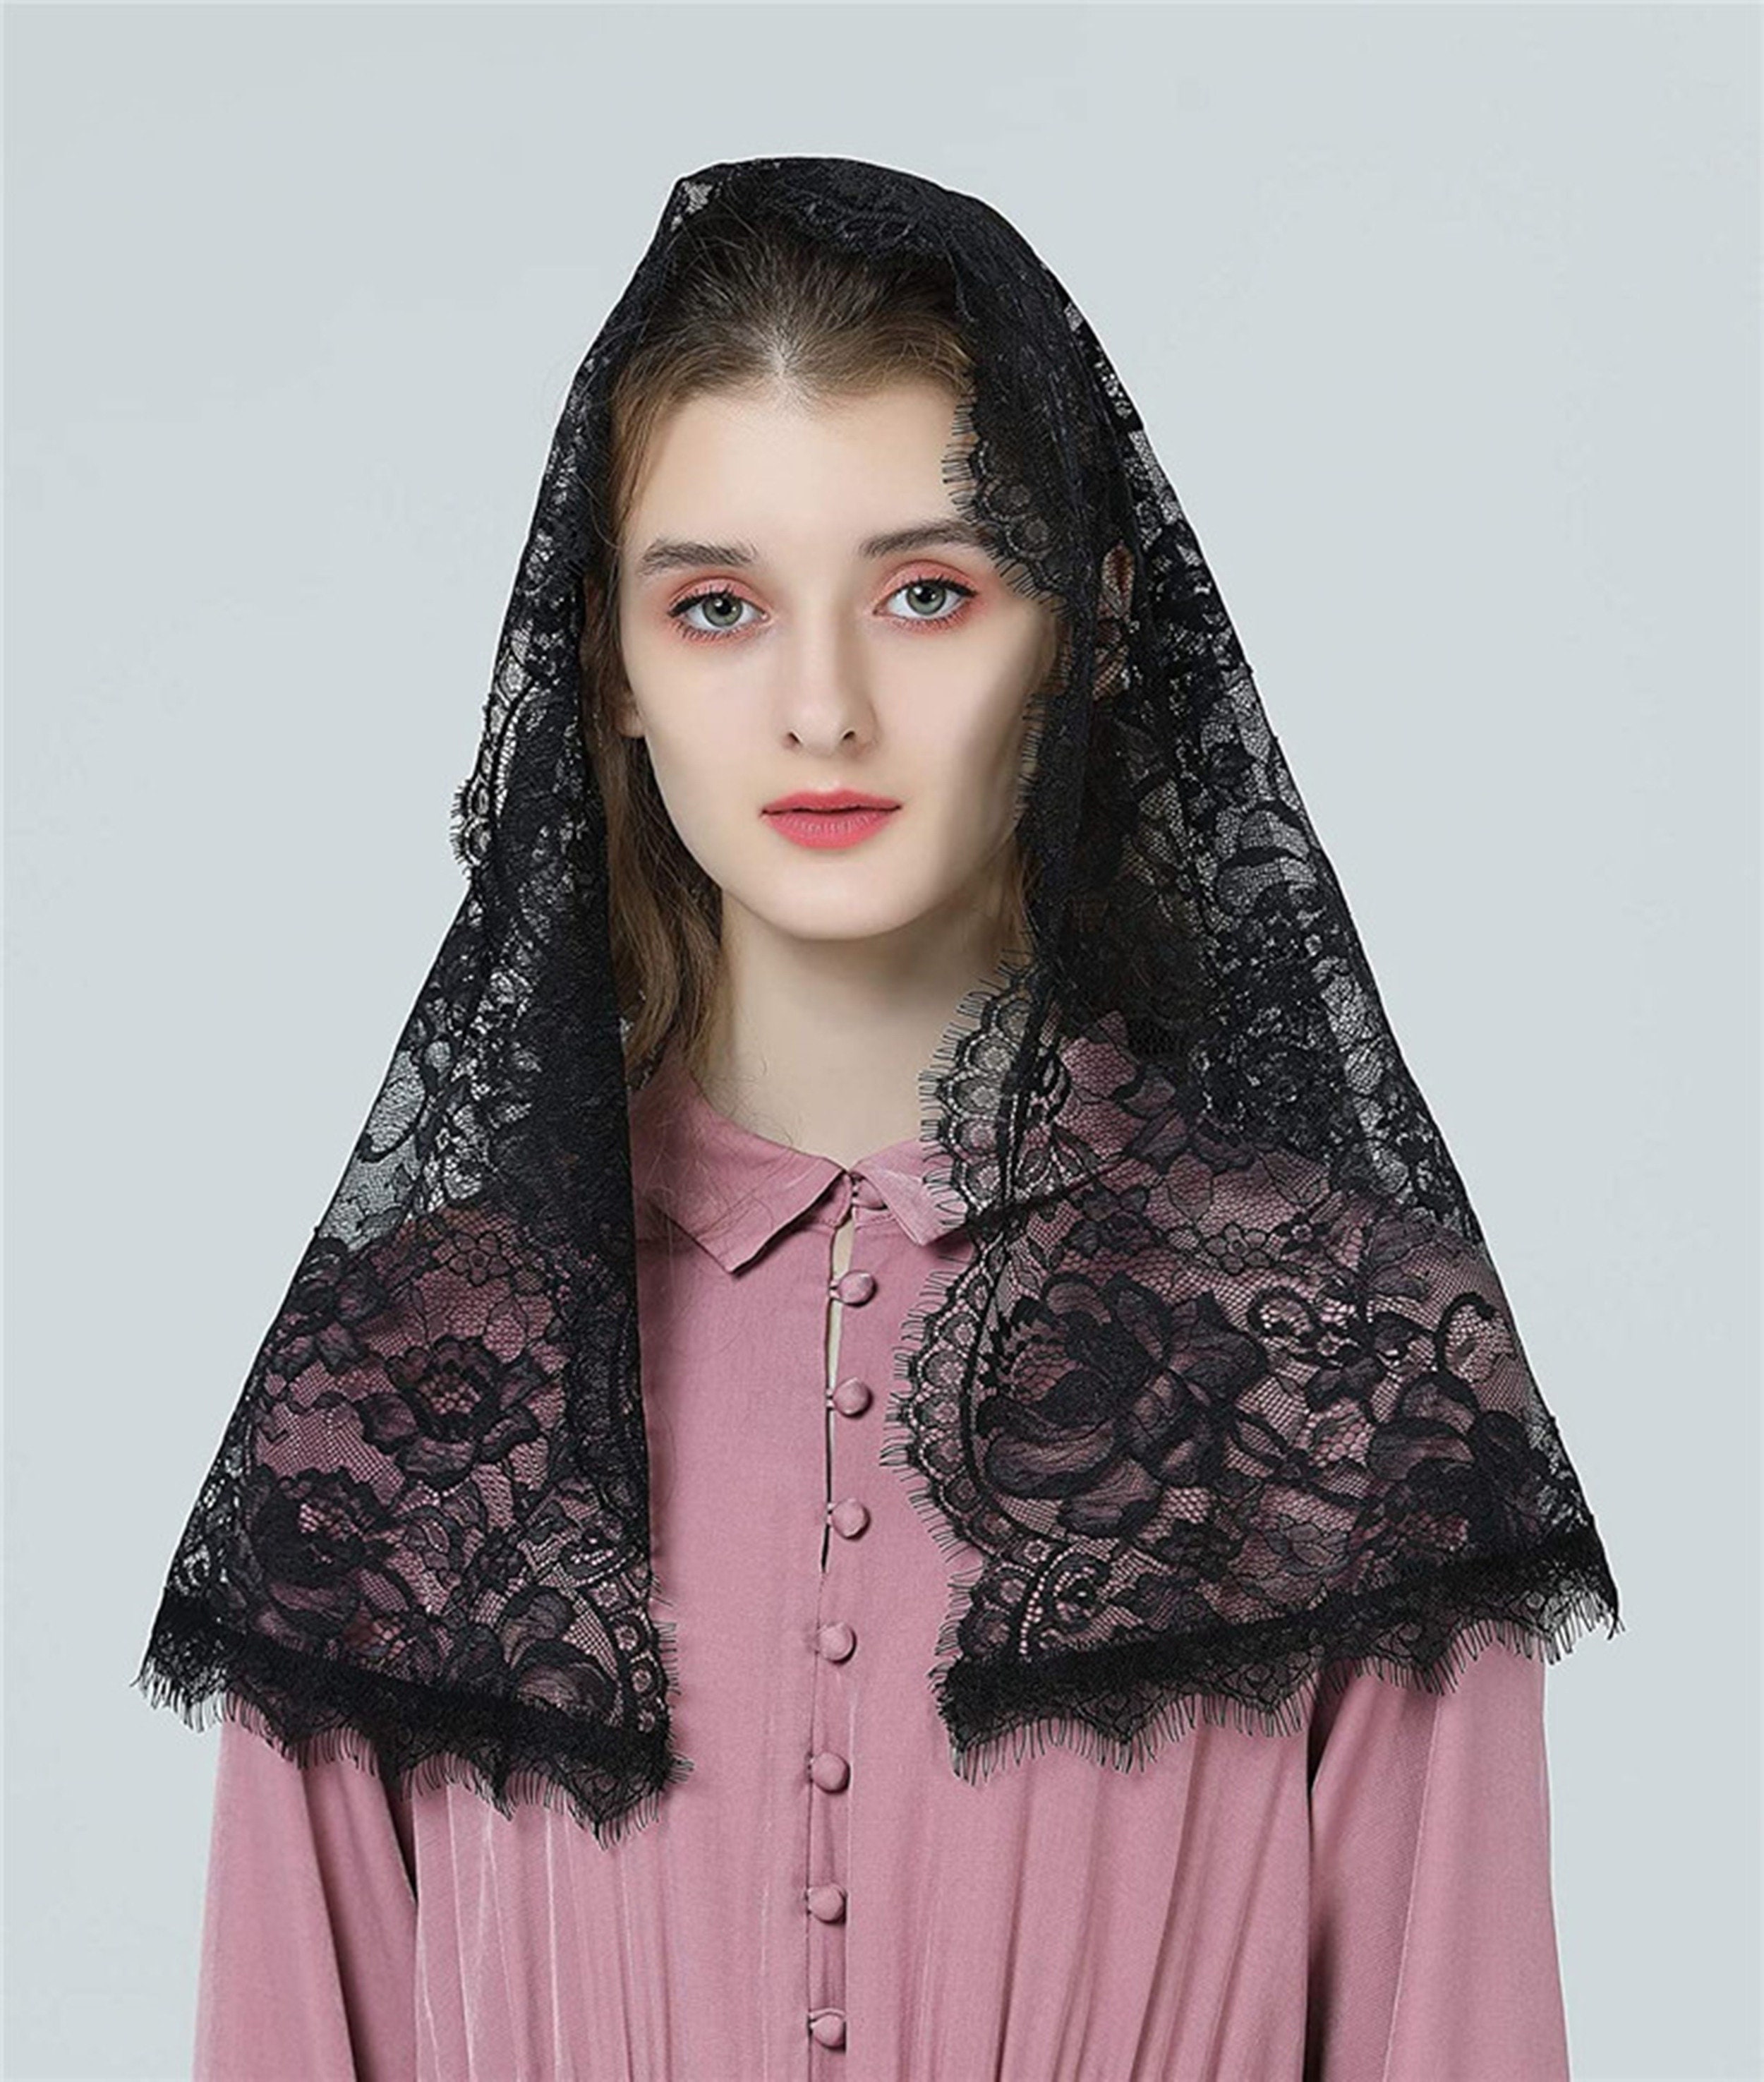 Black Lace Veil Minimalist Lace Scarf Catholic Head Covering | Etsy UK